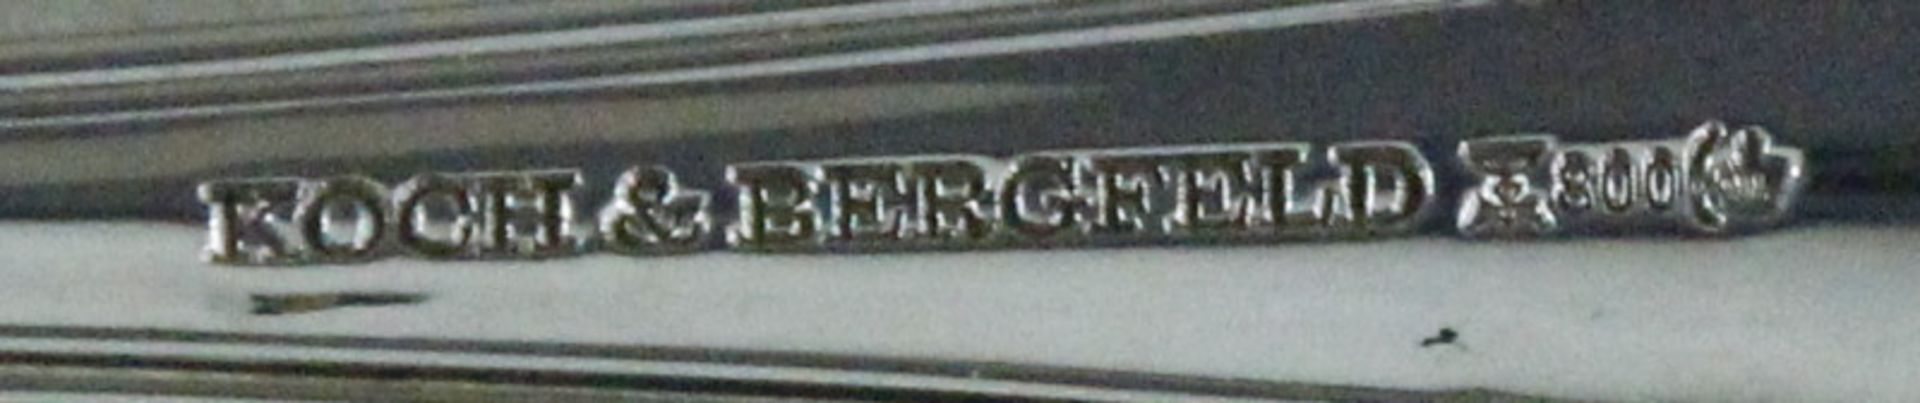 Salatvorlegebesteck aus 800er Silber der Silberwarenmanufaktur Koch & Bergfeld, Bremen, " - Bild 2 aus 2